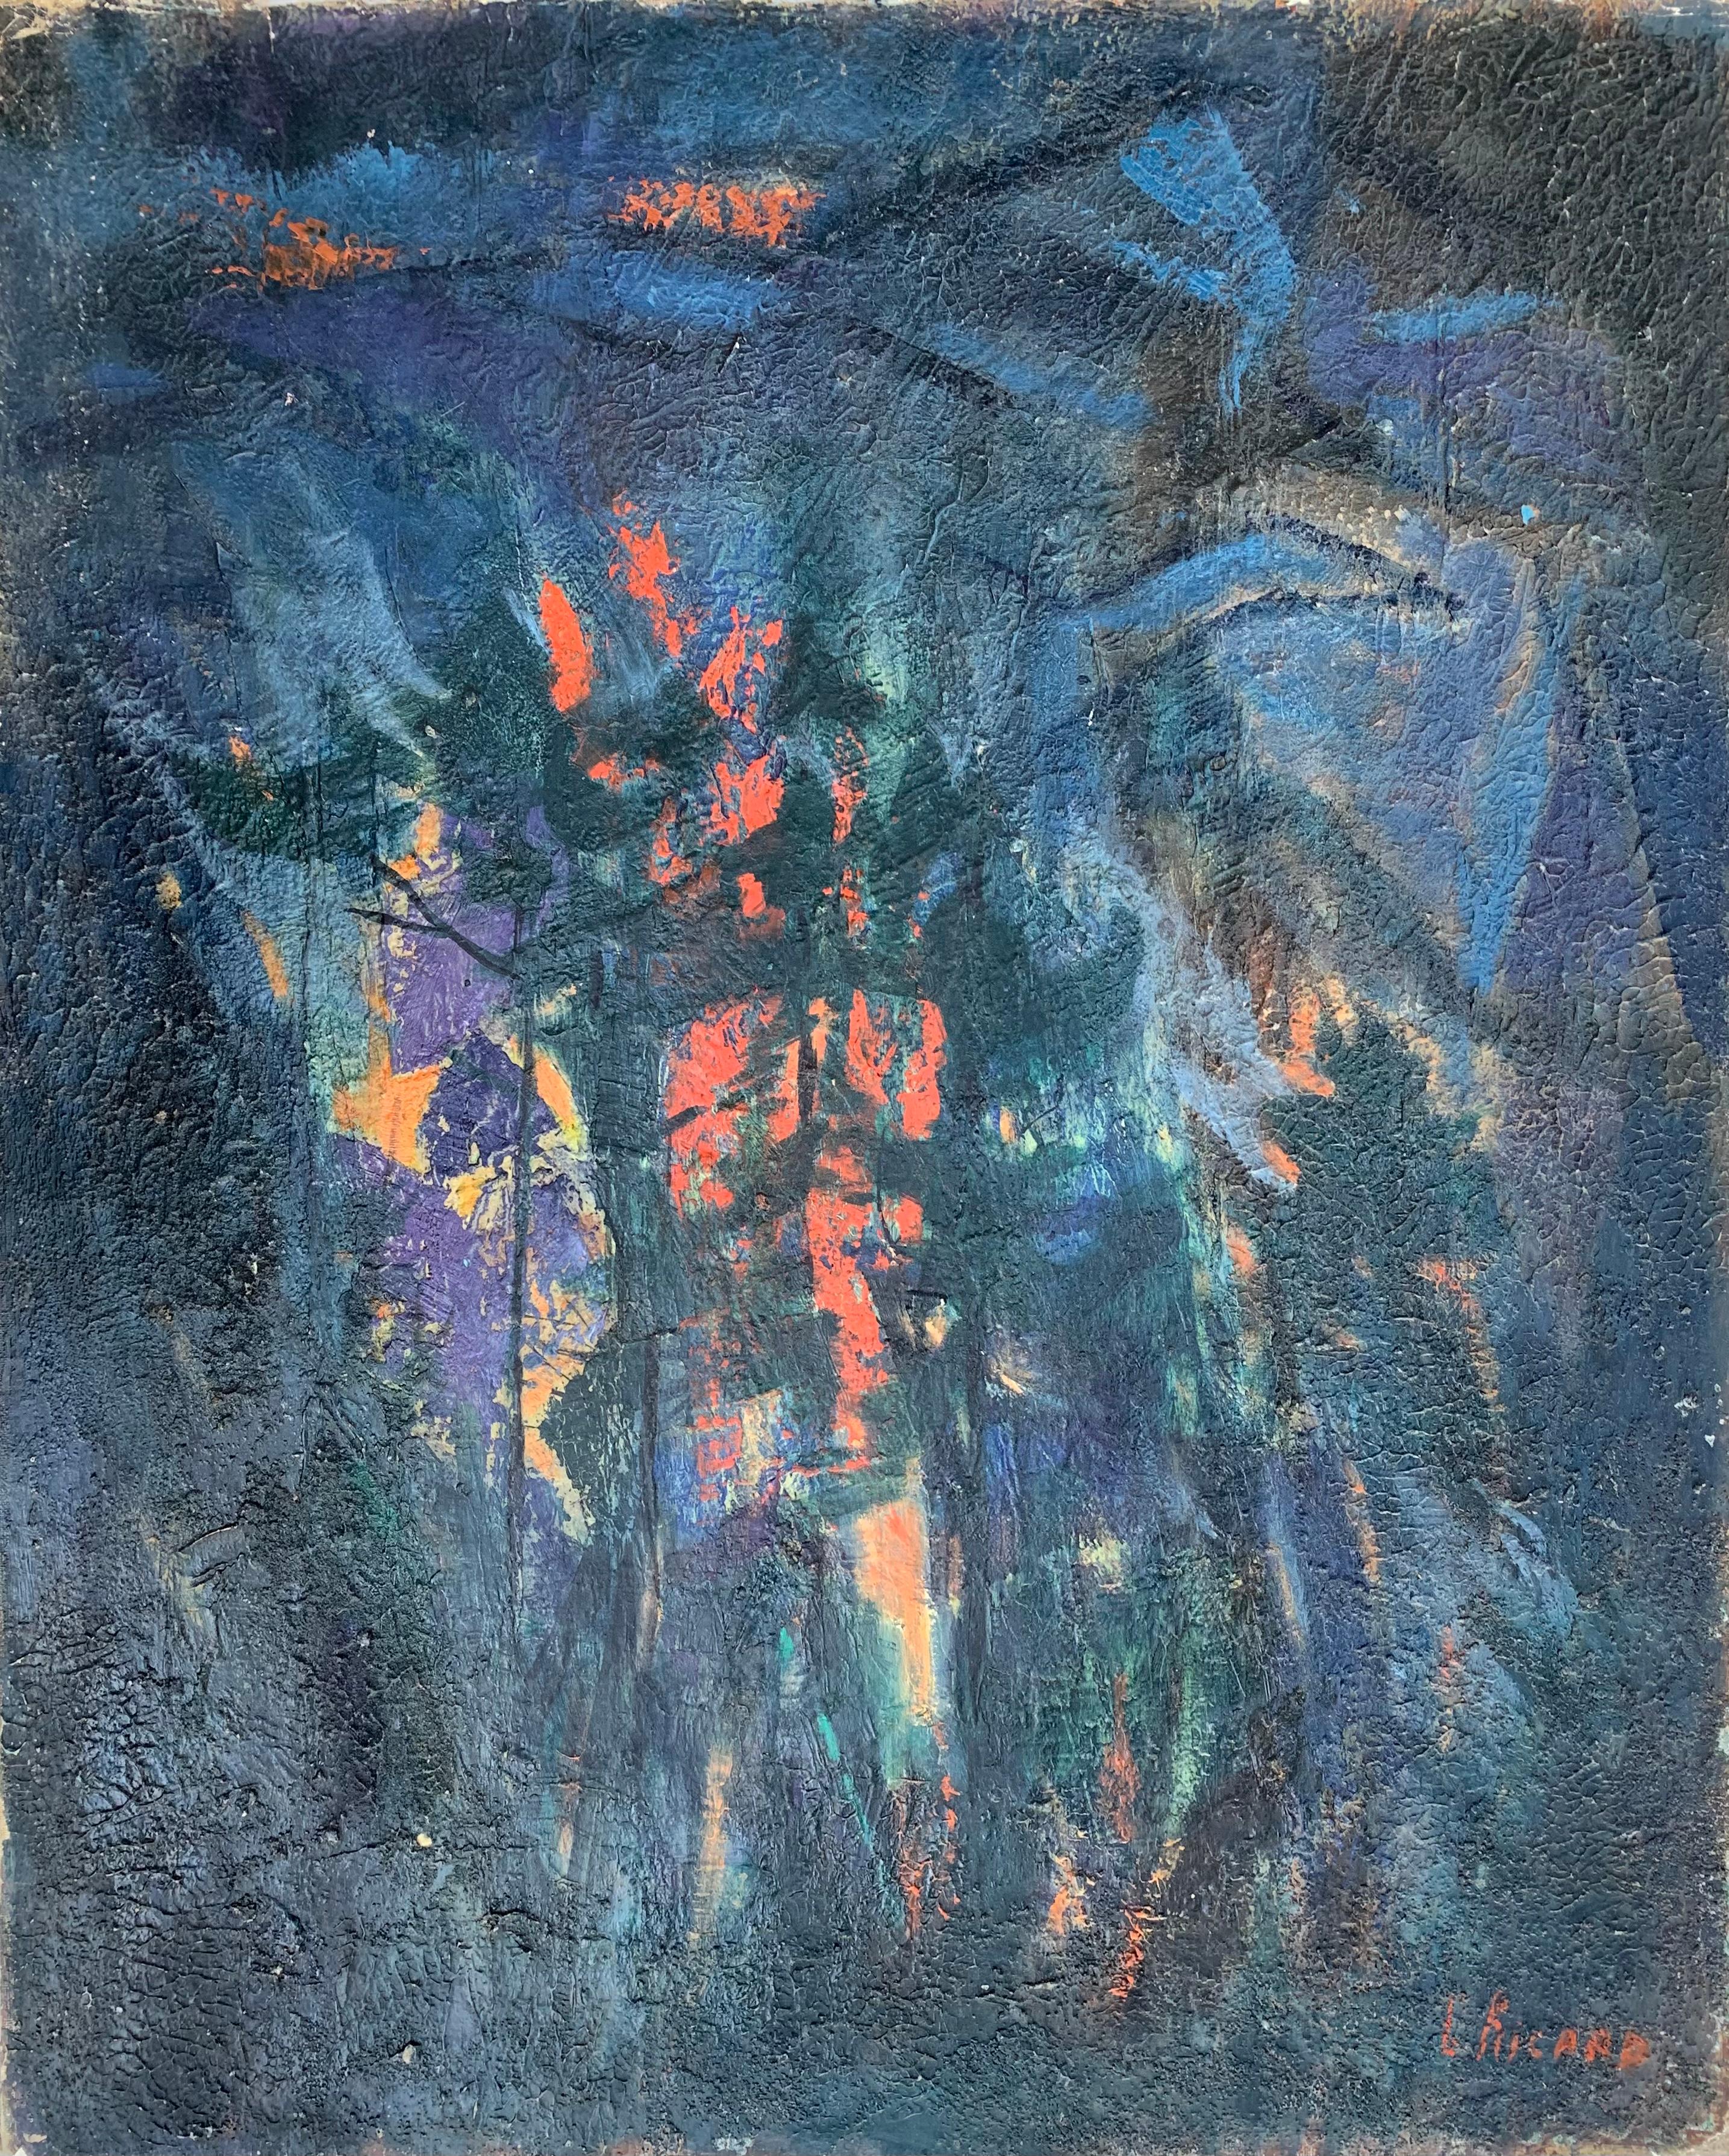 das Feuer", Nachtlandschaft von Gabrielle Ricard - Cordingley. Jahr 1967. 